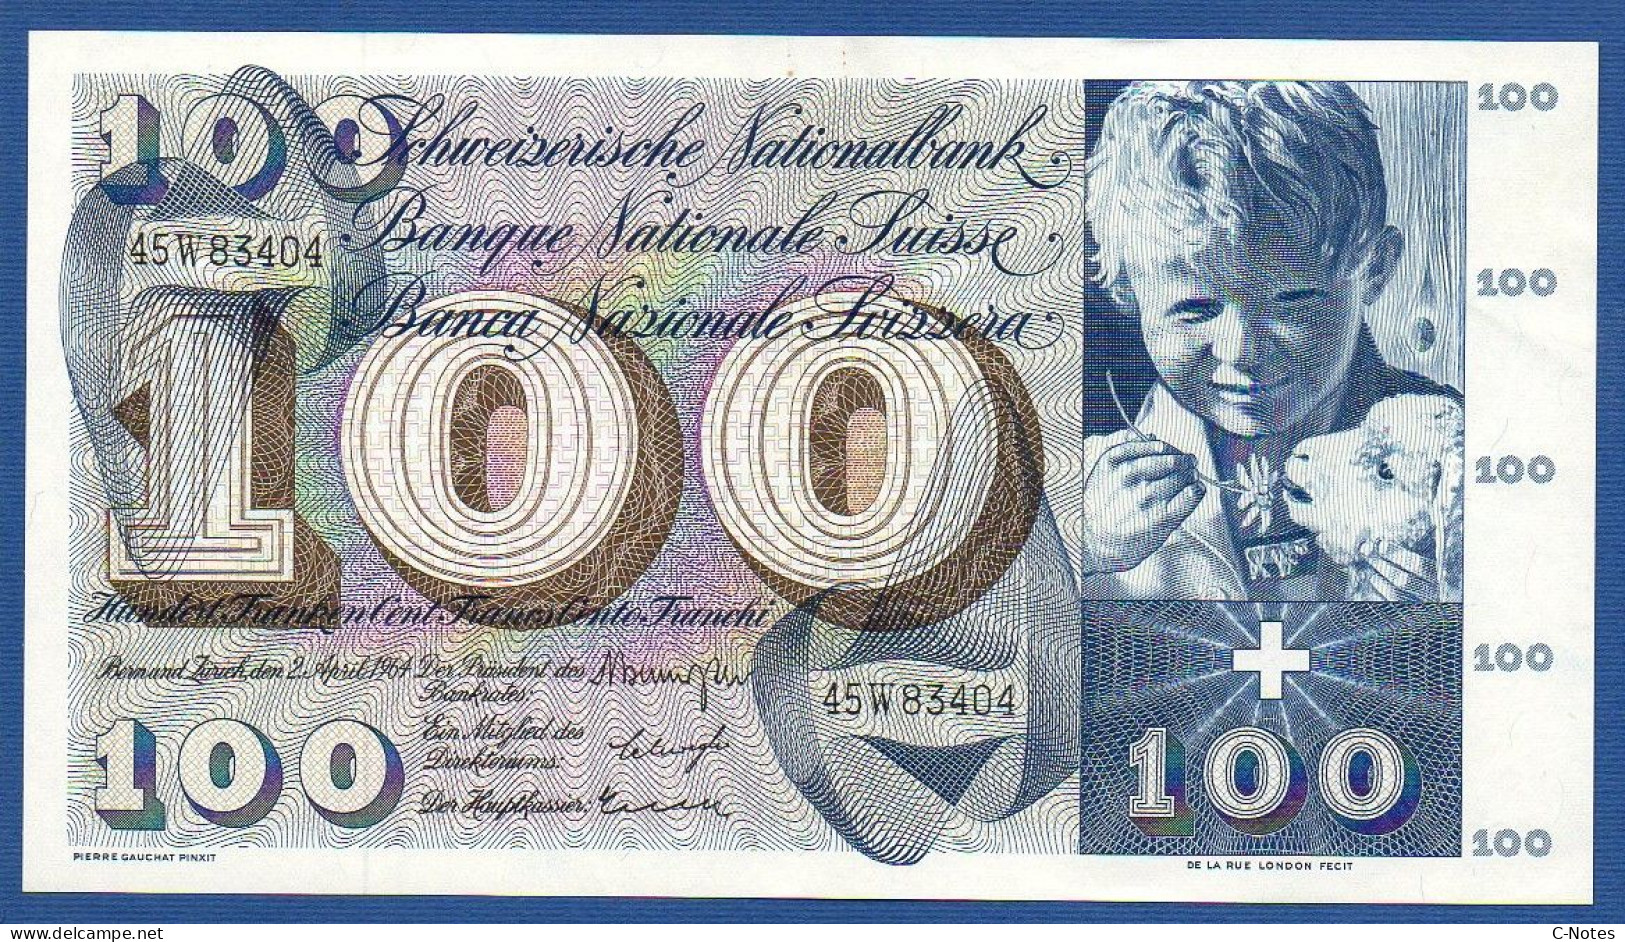 SWITZERLAND - P.49f(1) - 100 Francs 1964 AUNC, Serie 45W83404  -signatures: Brenno Galli / Schwegler / Kunz - Suisse